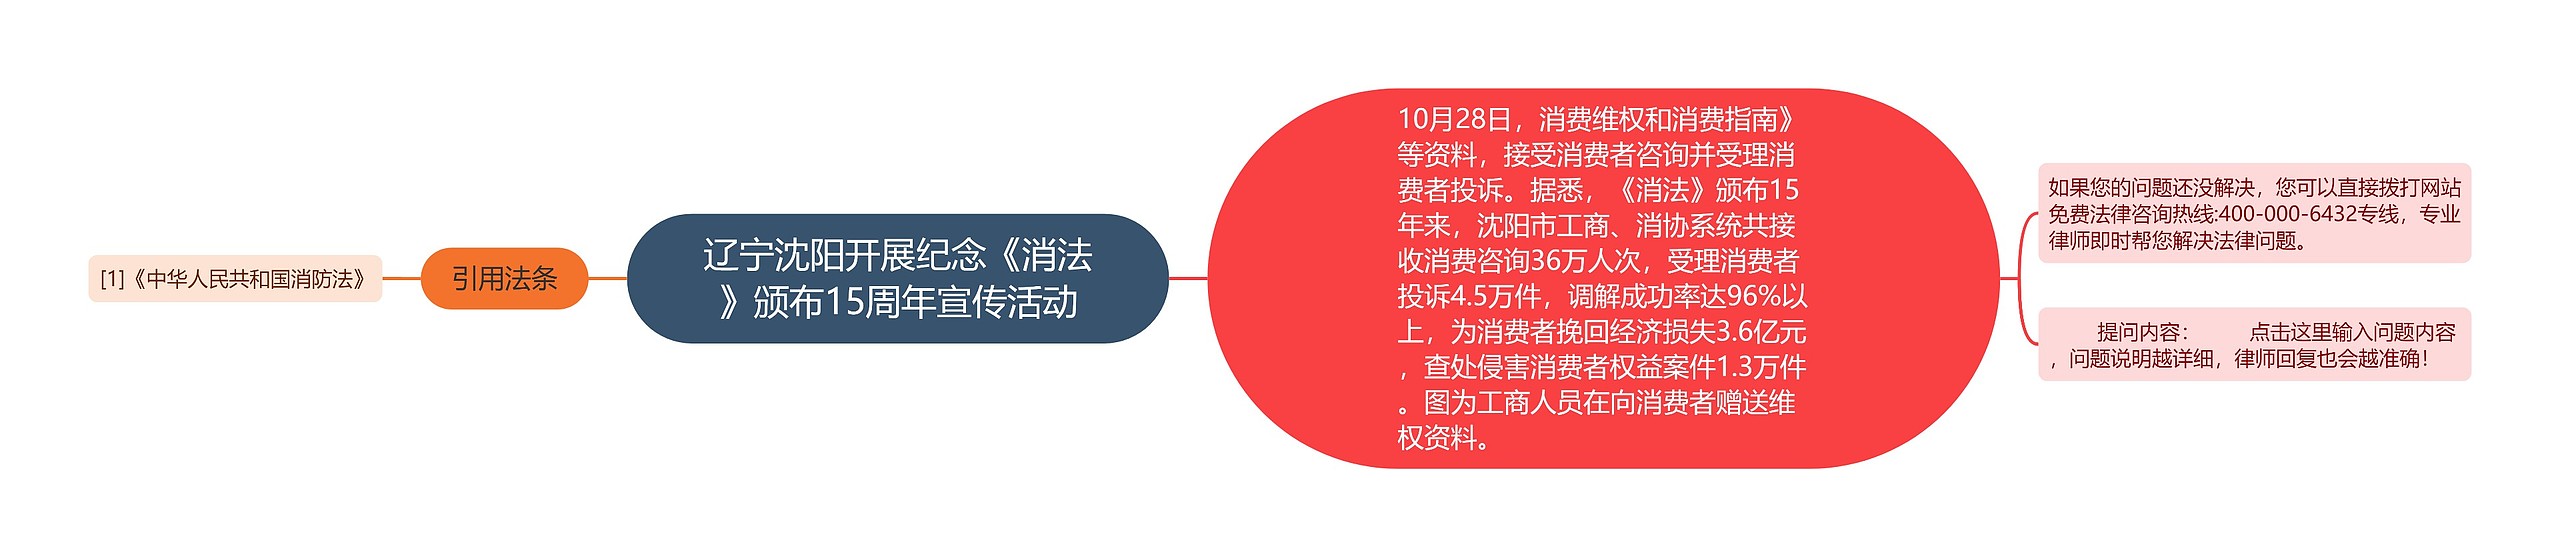 辽宁沈阳开展纪念《消法》颁布15周年宣传活动思维导图